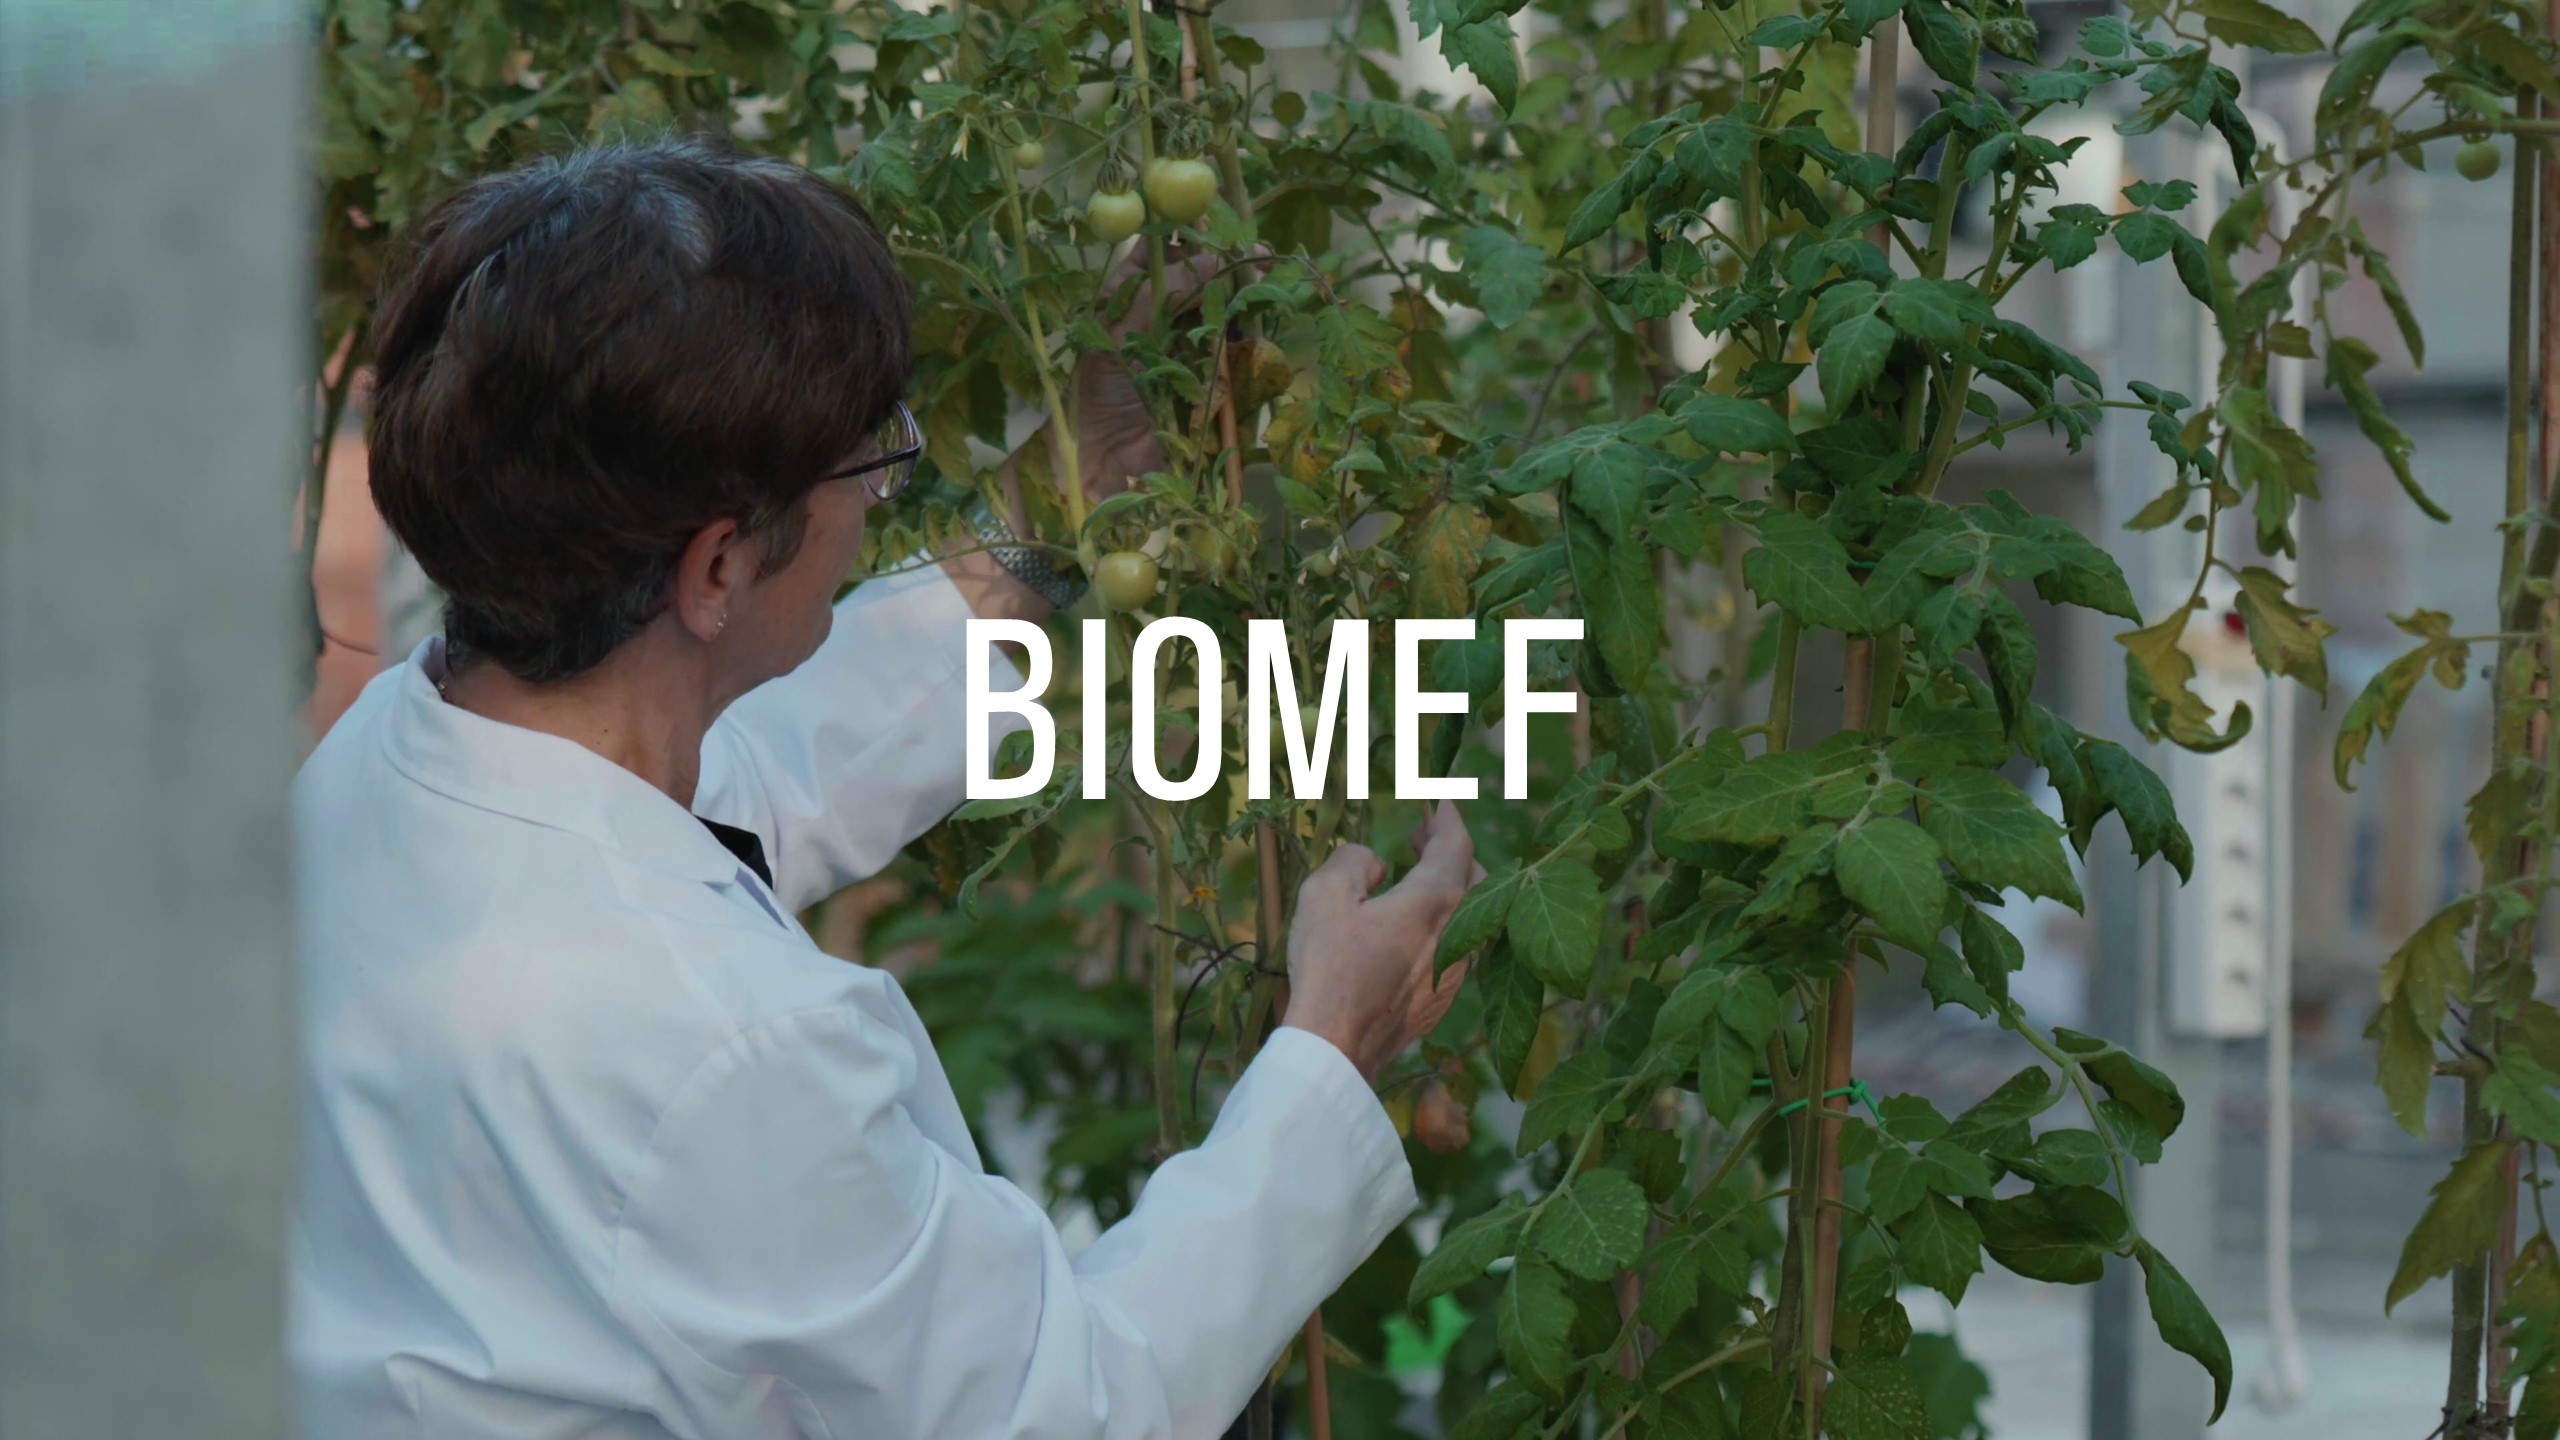 BIOMEF, los bioestimulantes un aliado para los cultivos del futuro. Proyecto colaborativo